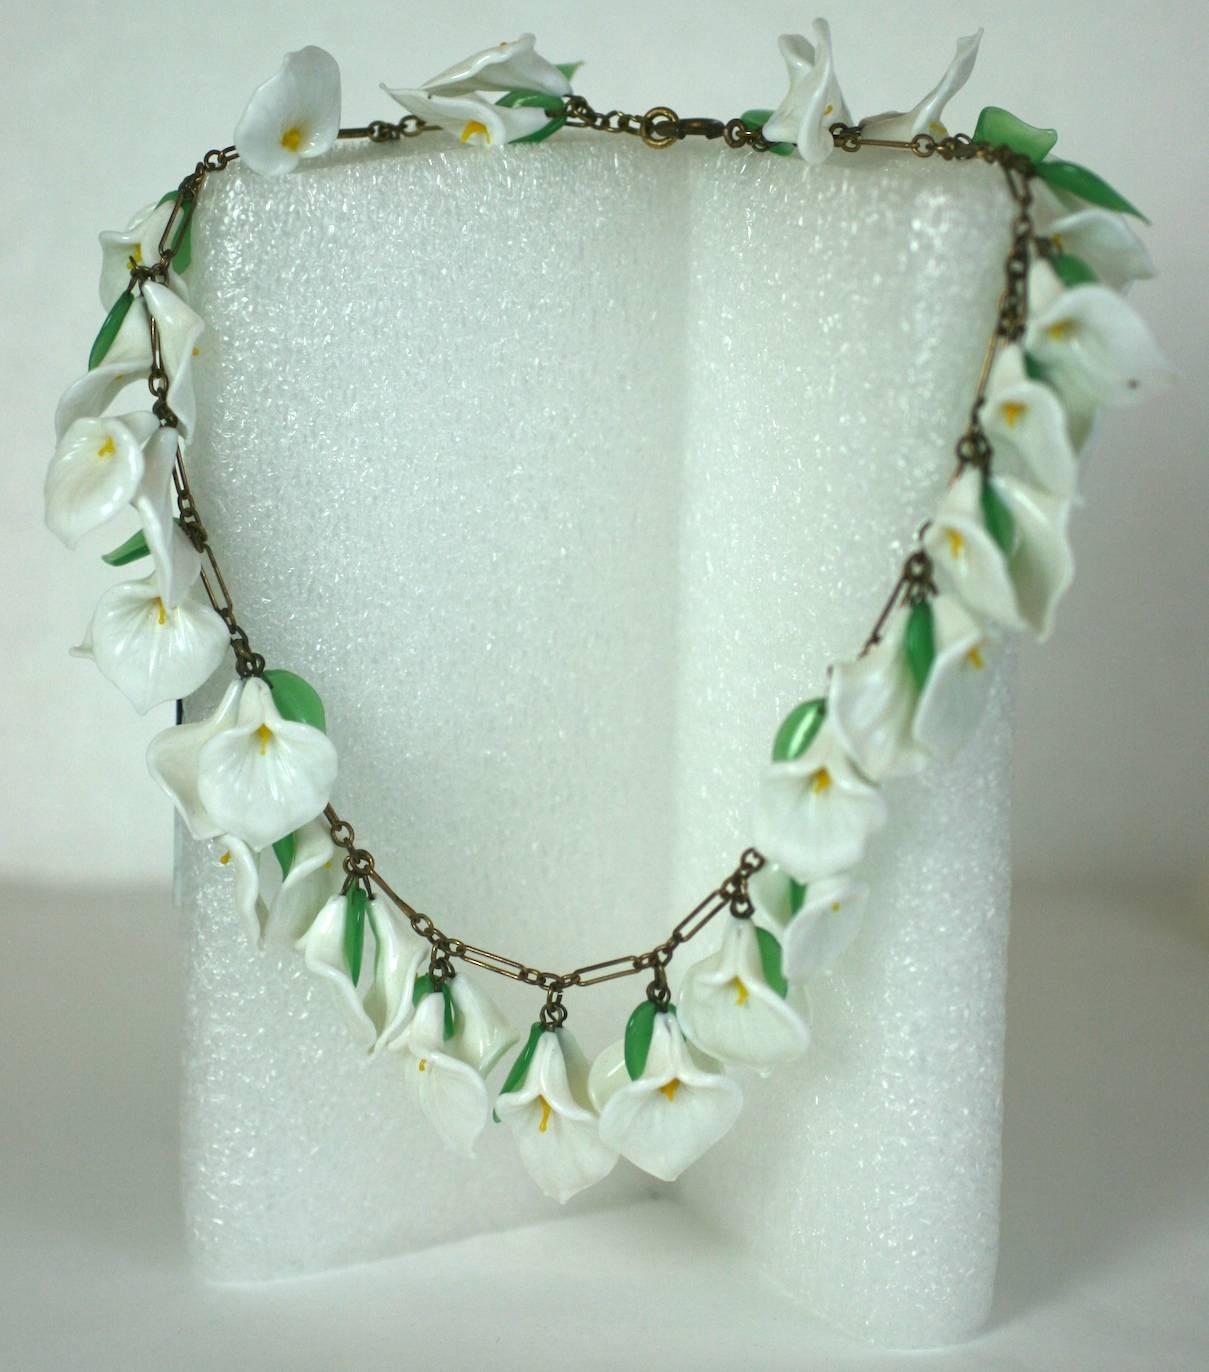 Antike italienische Calla Lily Halskette aus lampwork Glas um 1930. Besteht aus handgefertigten, naturalistischen Blütenköpfen aus Milchglas und winzigen grünen Blättern. Wunderschöne, zarte Handwerkskunst, perfekt für eine Sommerhochzeit.  italien